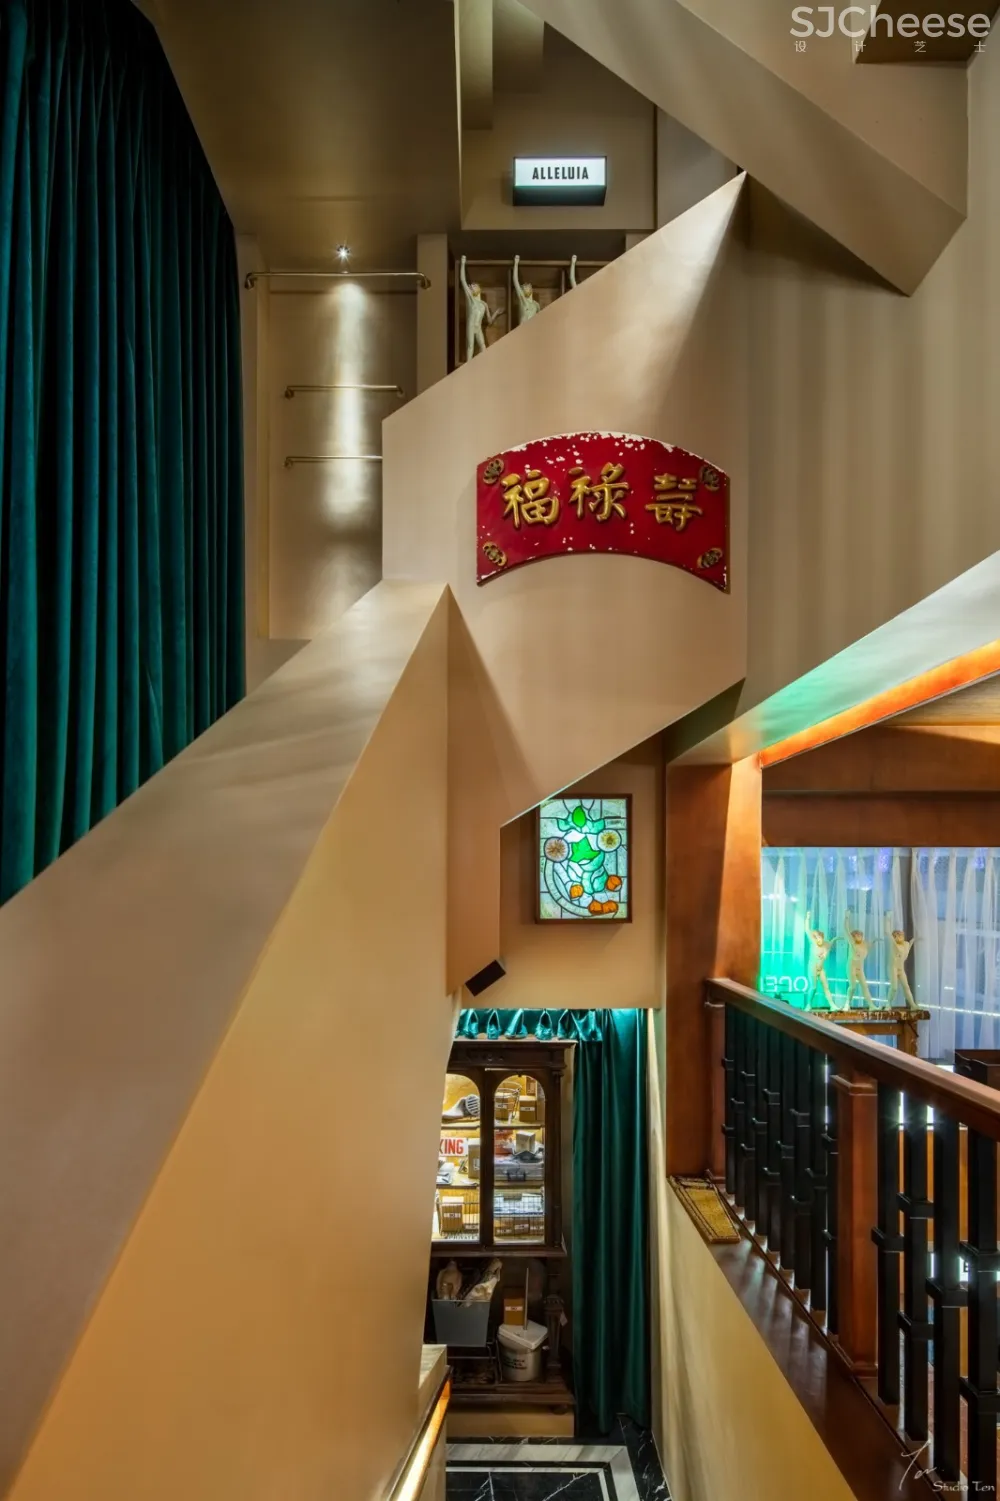 复古老上海范儿·泰式茶餐厅 | Giovanni zhou-时刻设计网